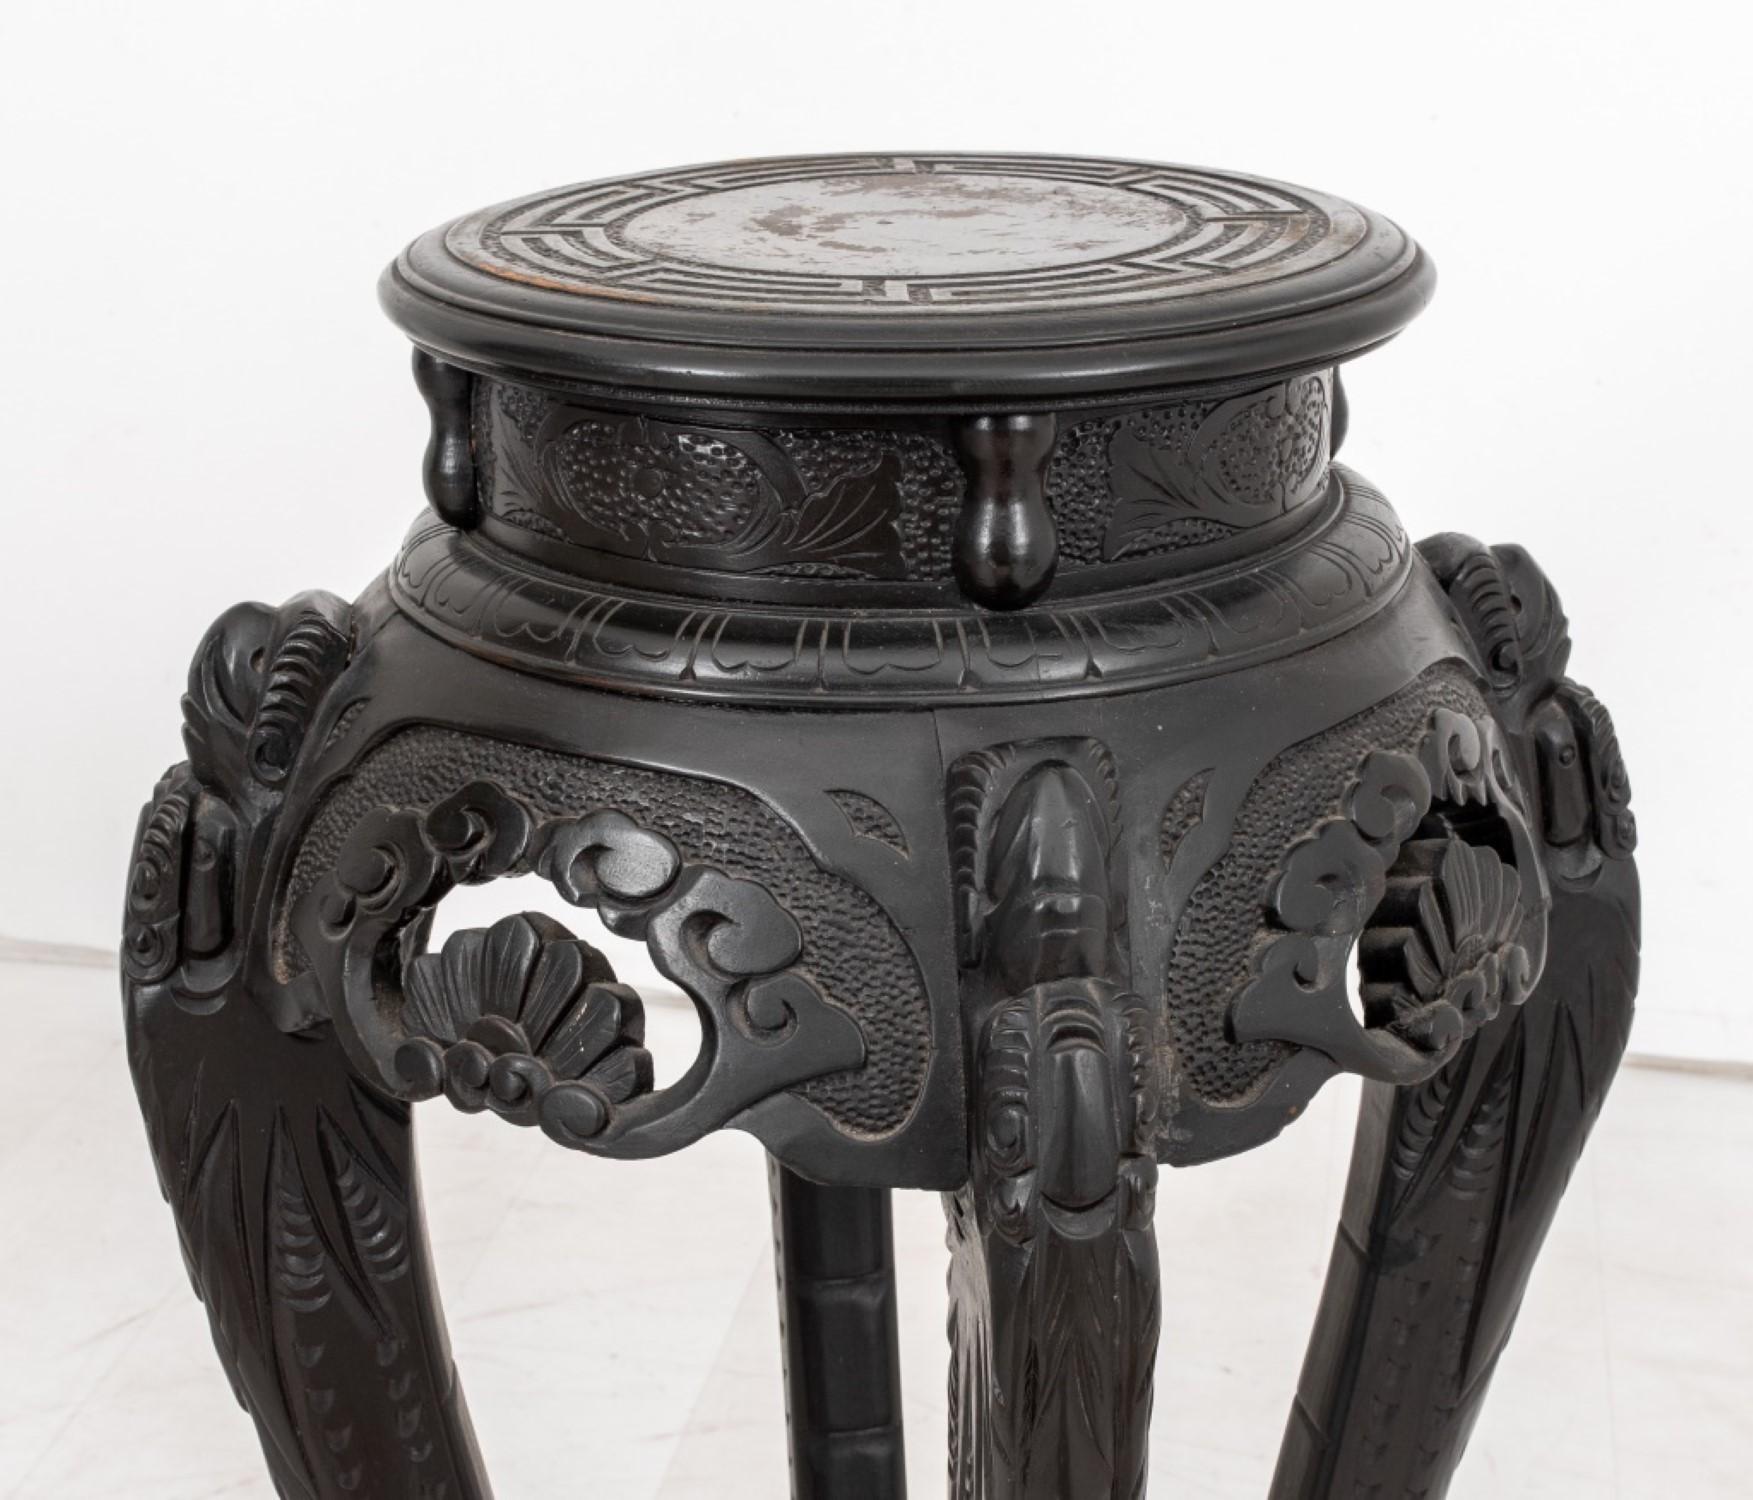 Le support de plantes ou la petite table sculptée chinoise a des dimensions de 34